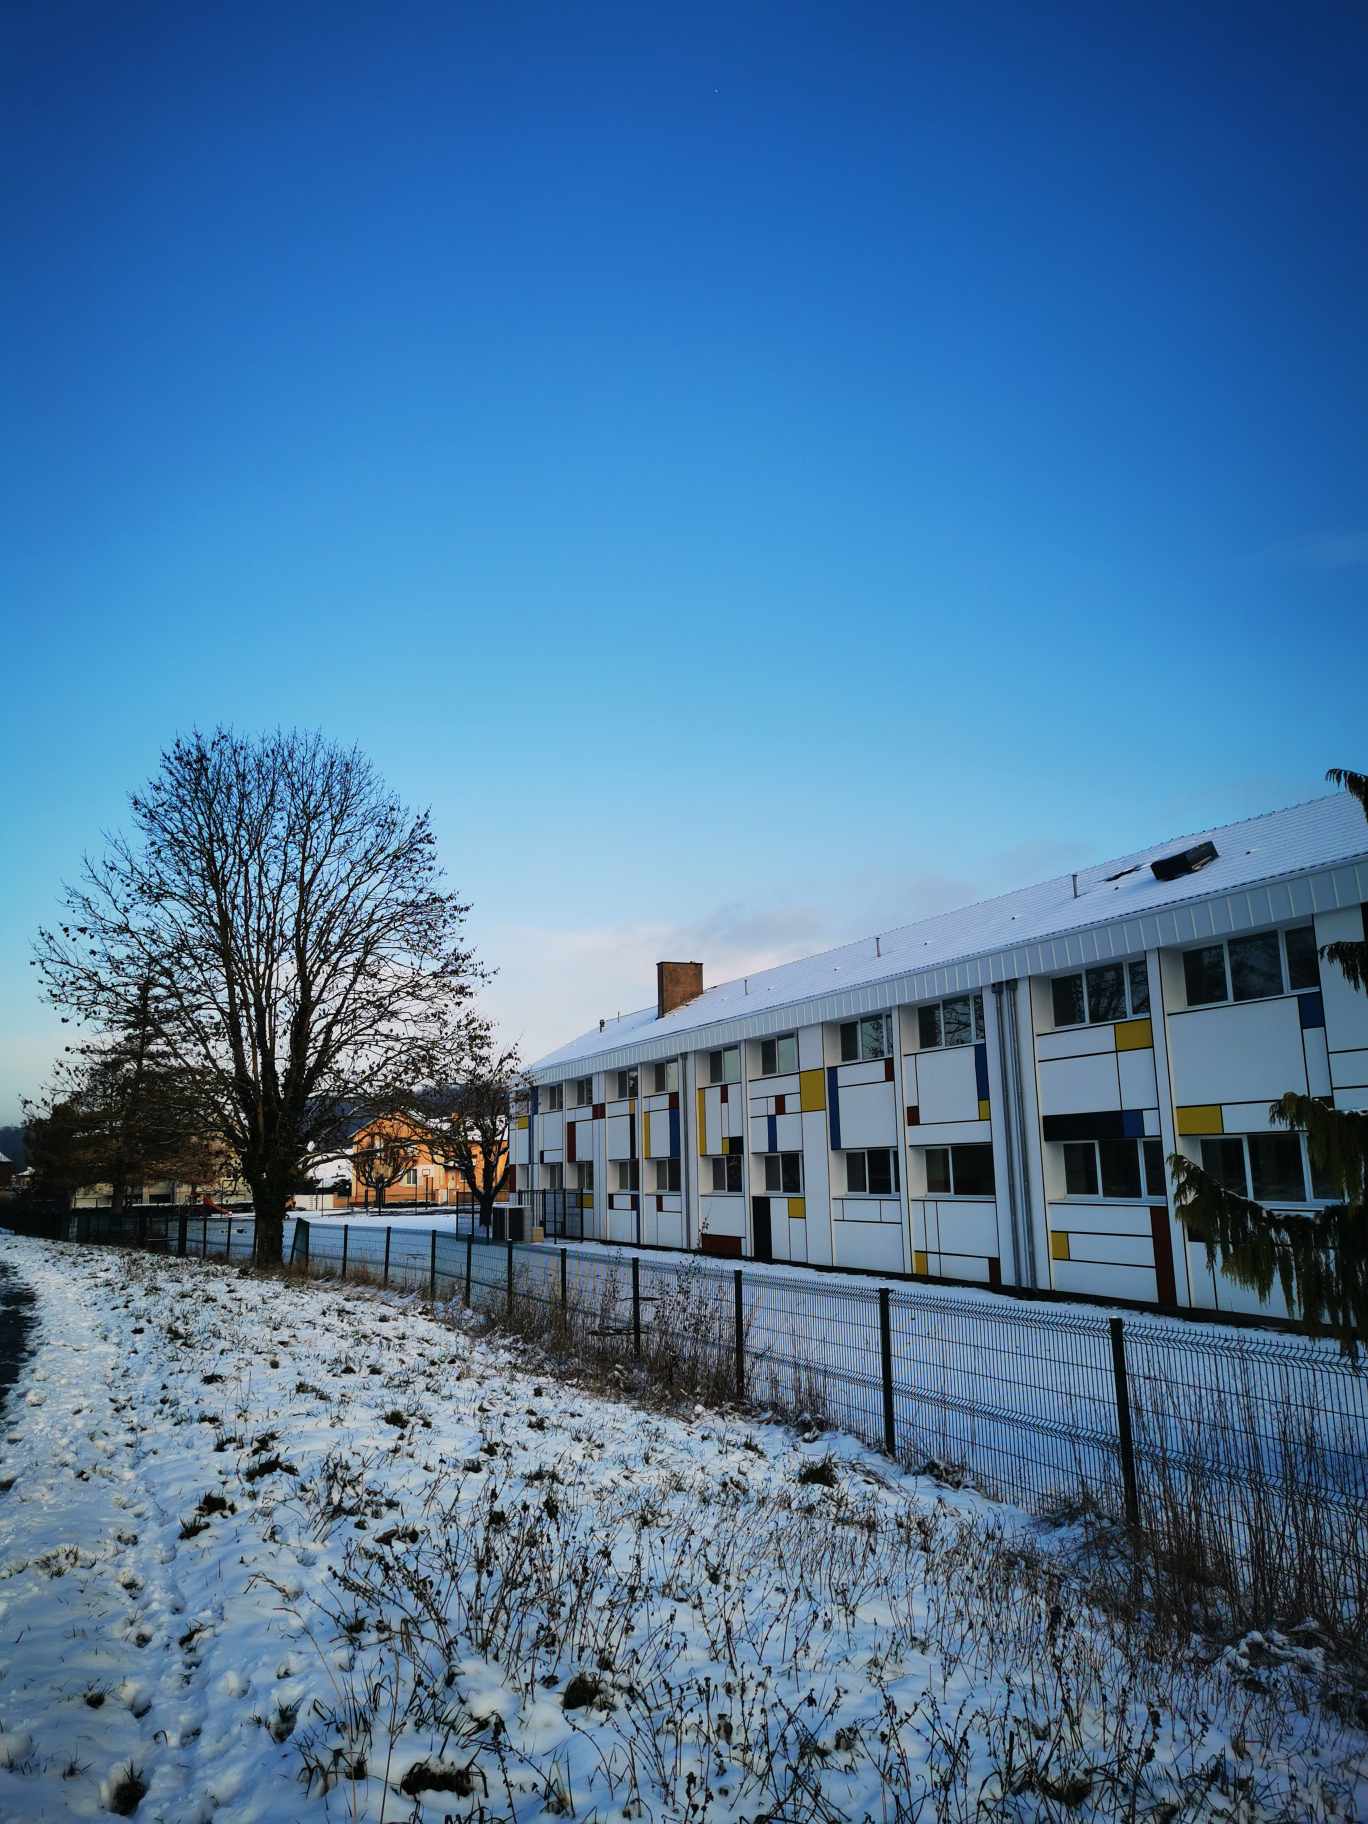 Photo de Mme Chatelain, neige et ciel bleu de matinée ensoleillée.